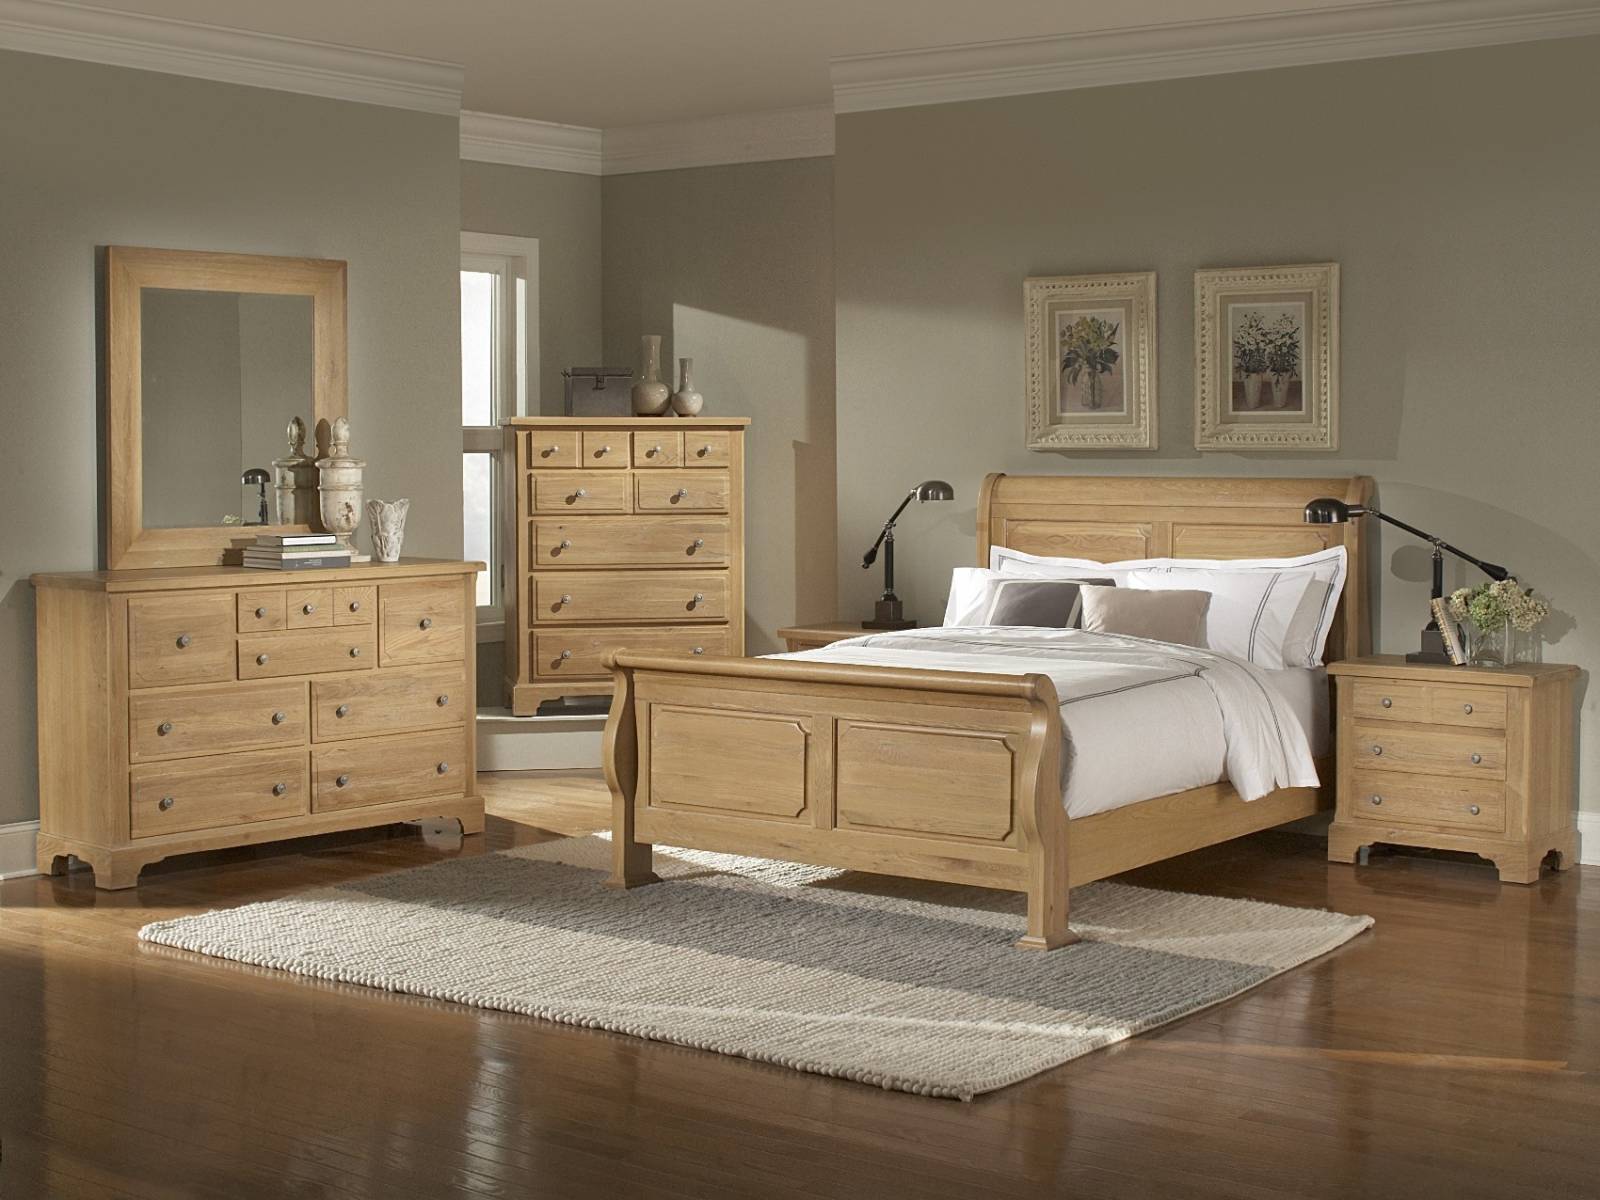 Wood Furniture Bedroom Ideas